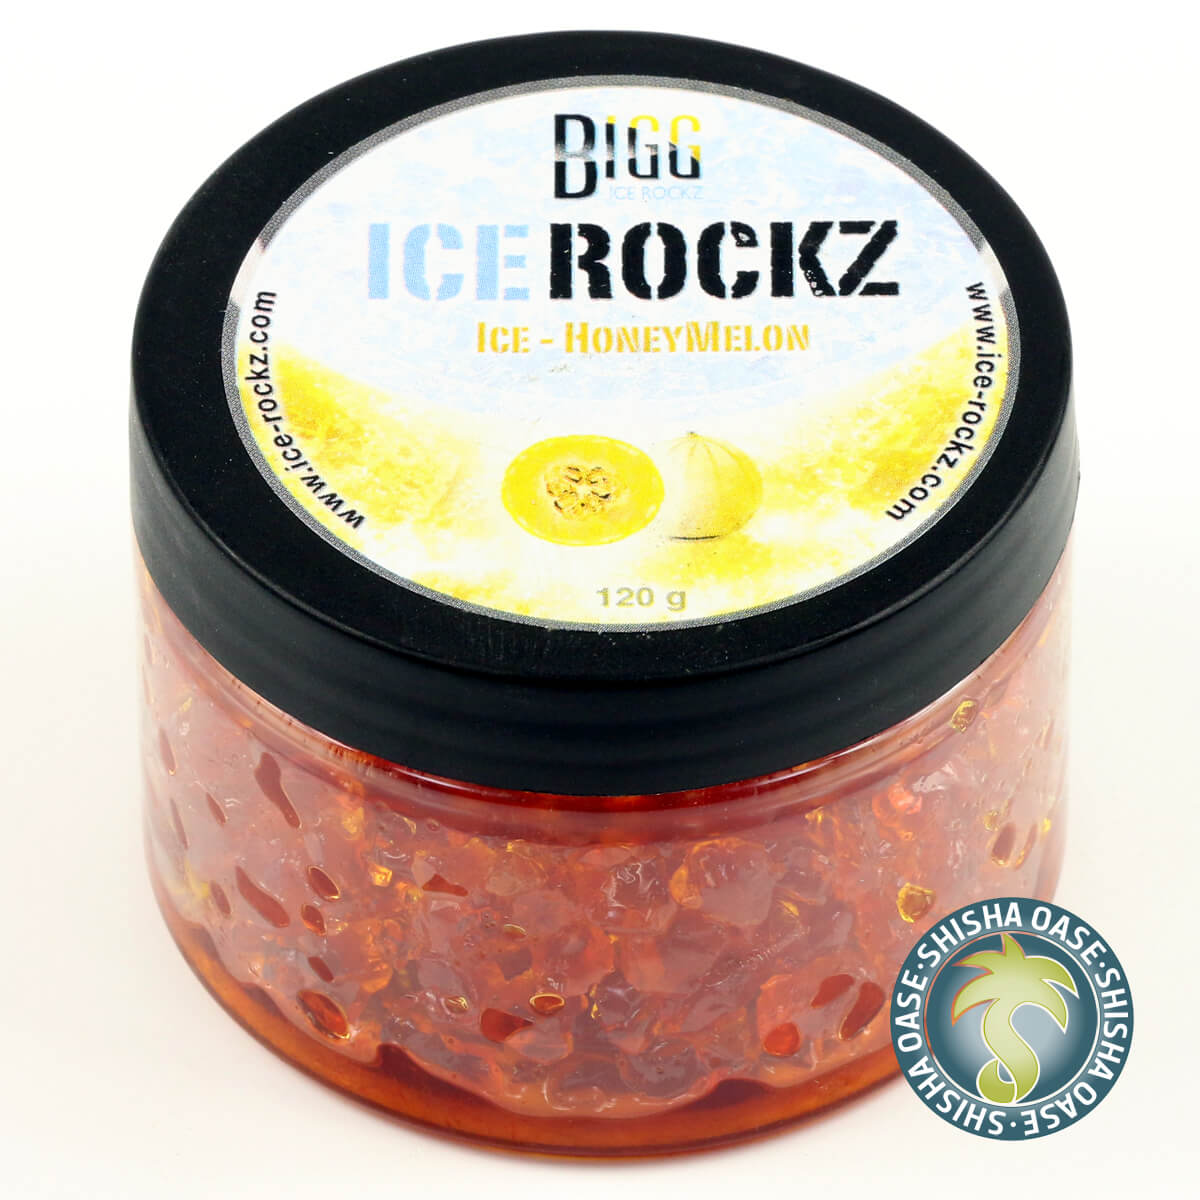 Bigg Ice Rockz - Ice Melon 120g